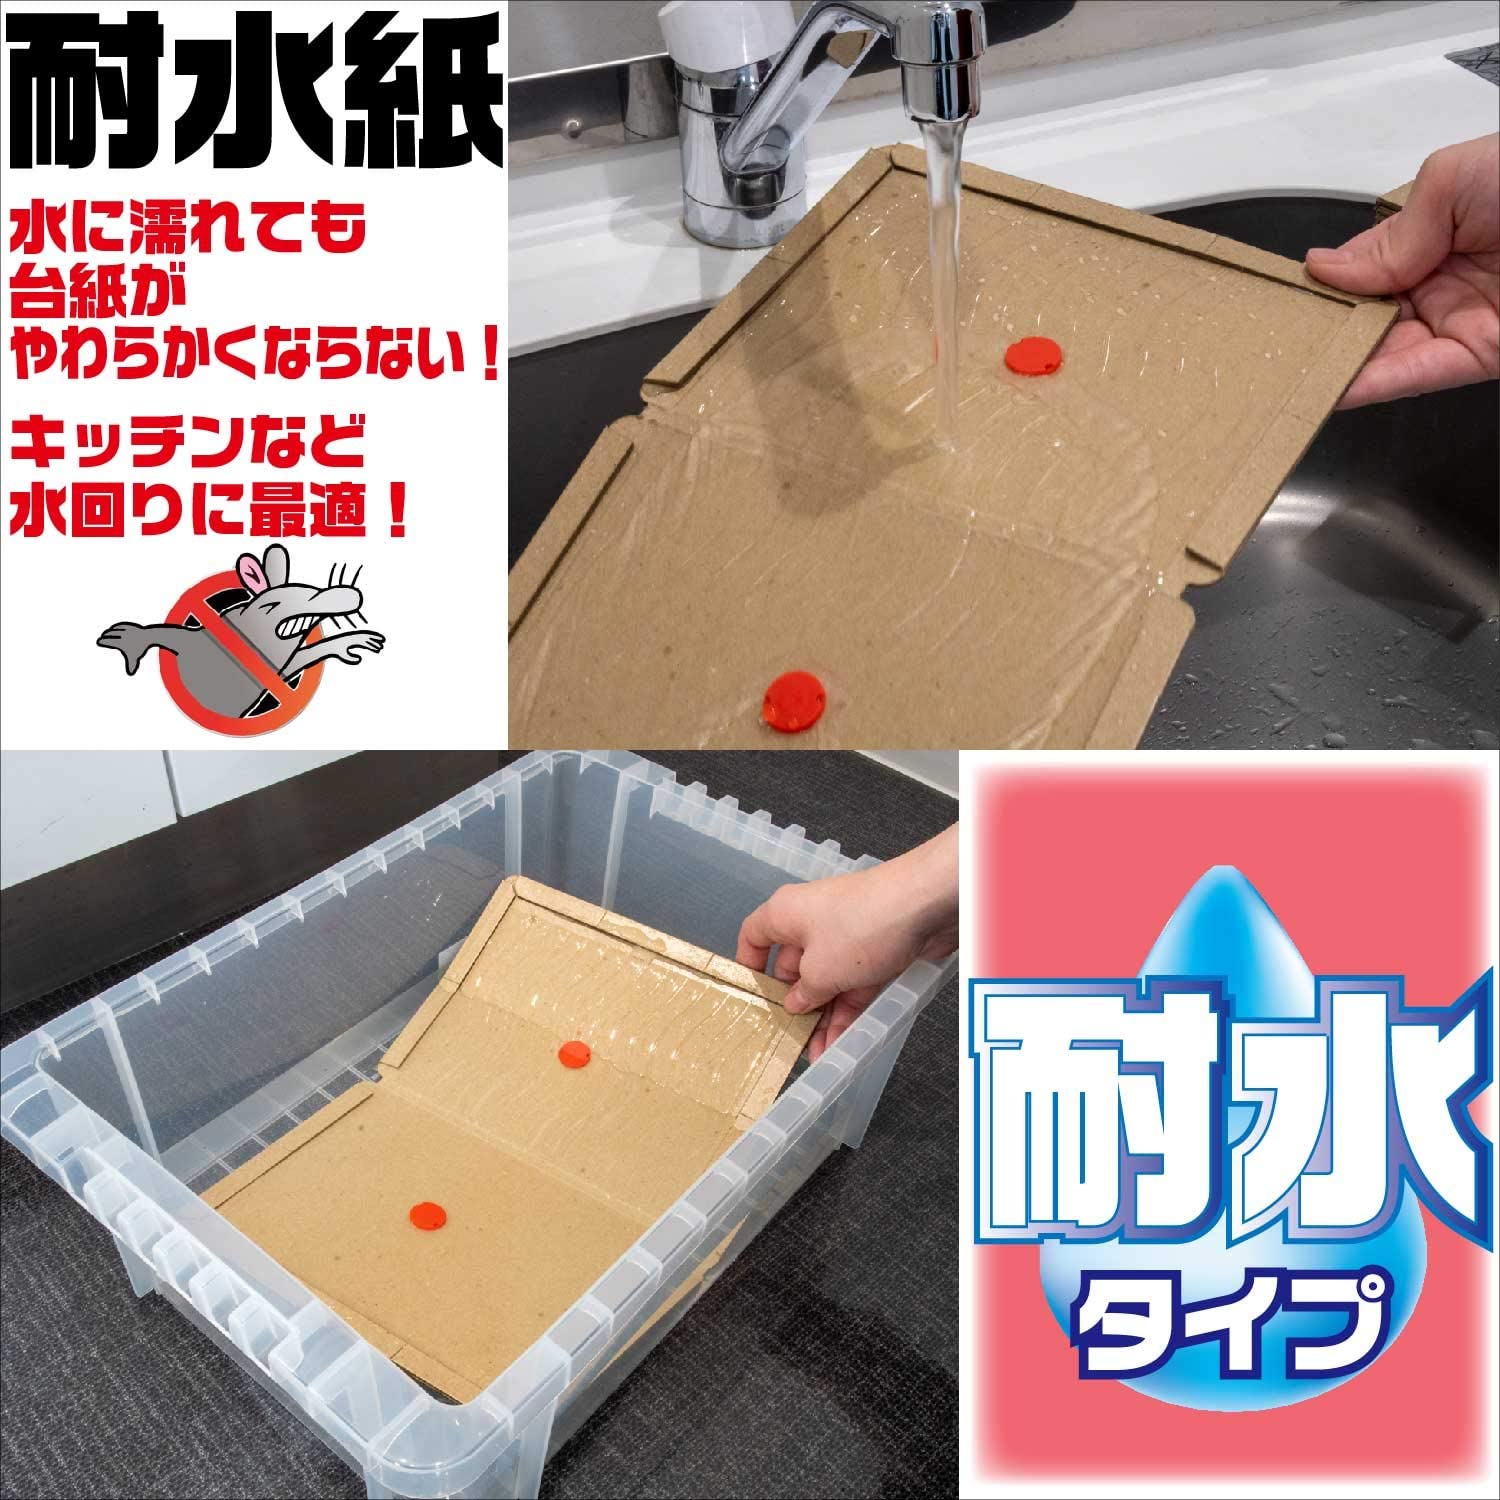 Bẫy keo dính chuột an toàn Sanada Seiko Nhật Bản - Hàng nội địa Nhật Bản (#Made in Japan)